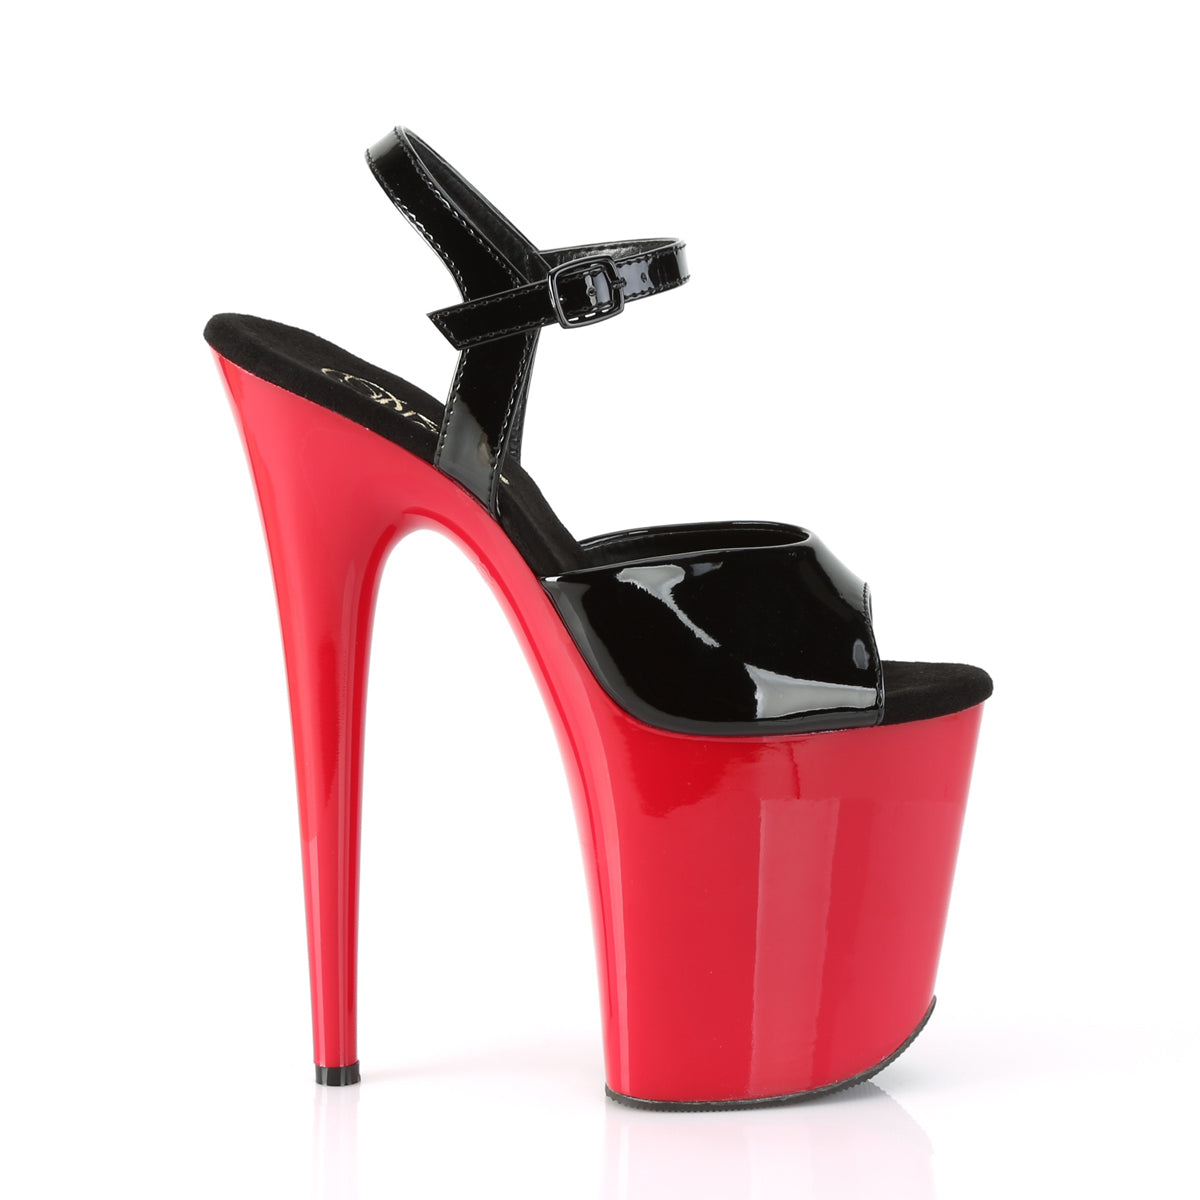 Pleaser Sandales pour femmes FLAMINGO-809 blk pat / rouge